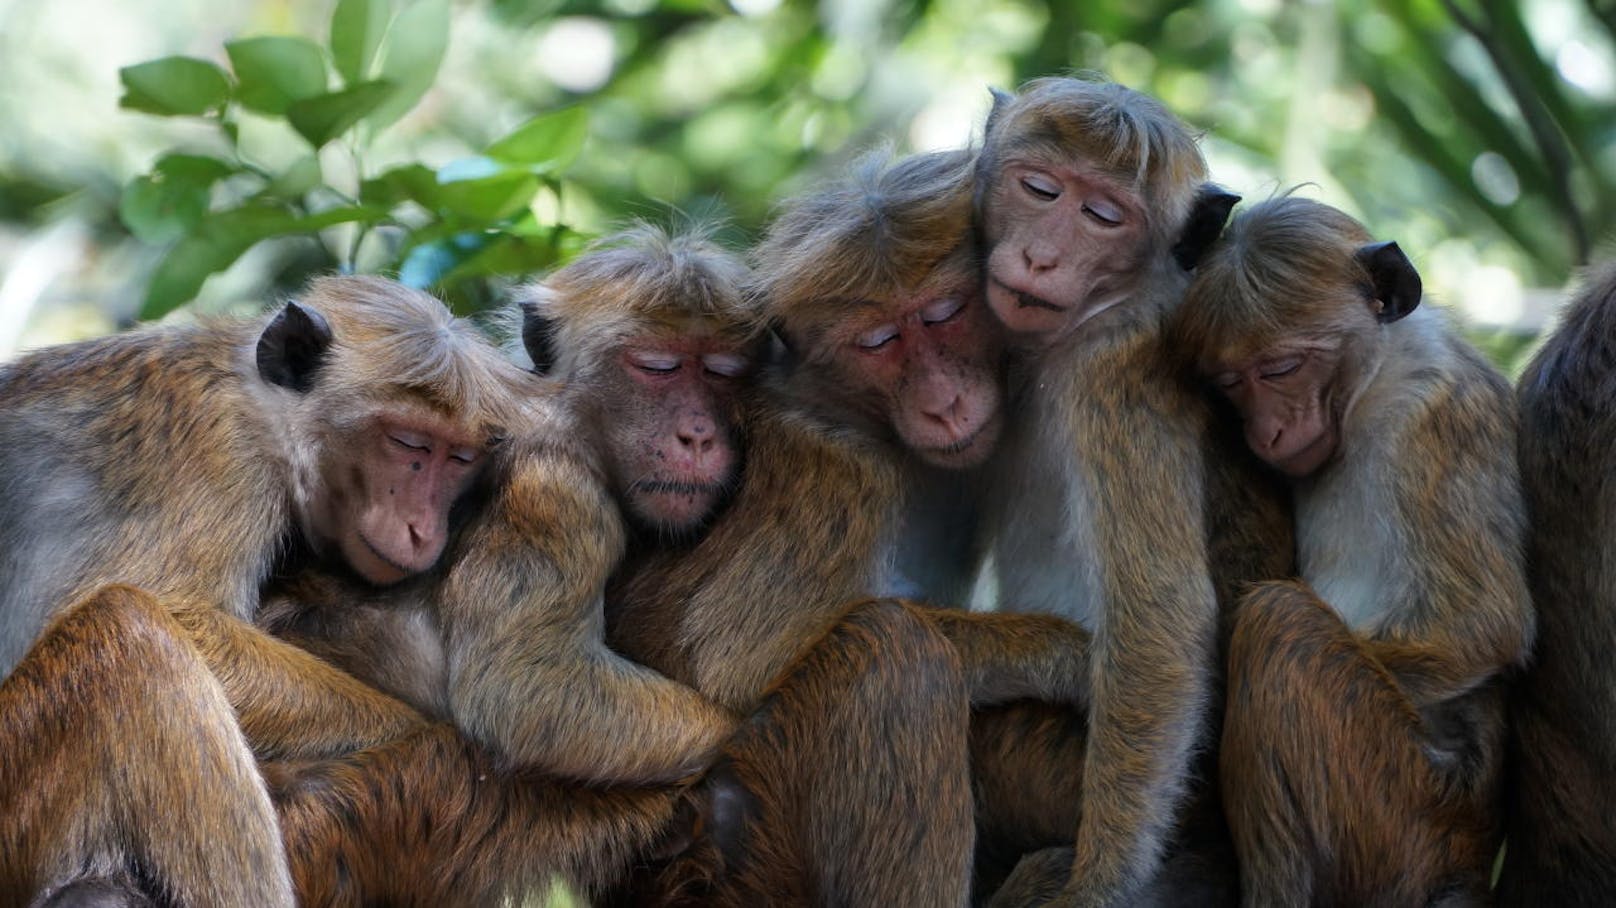 <b>Affen-Nickerchen!</b> Eng umschlungen halten vier Hutaffen in der Nähe der heiligen Stadt Kandy, Sri Lanka, ein Nickerchen.